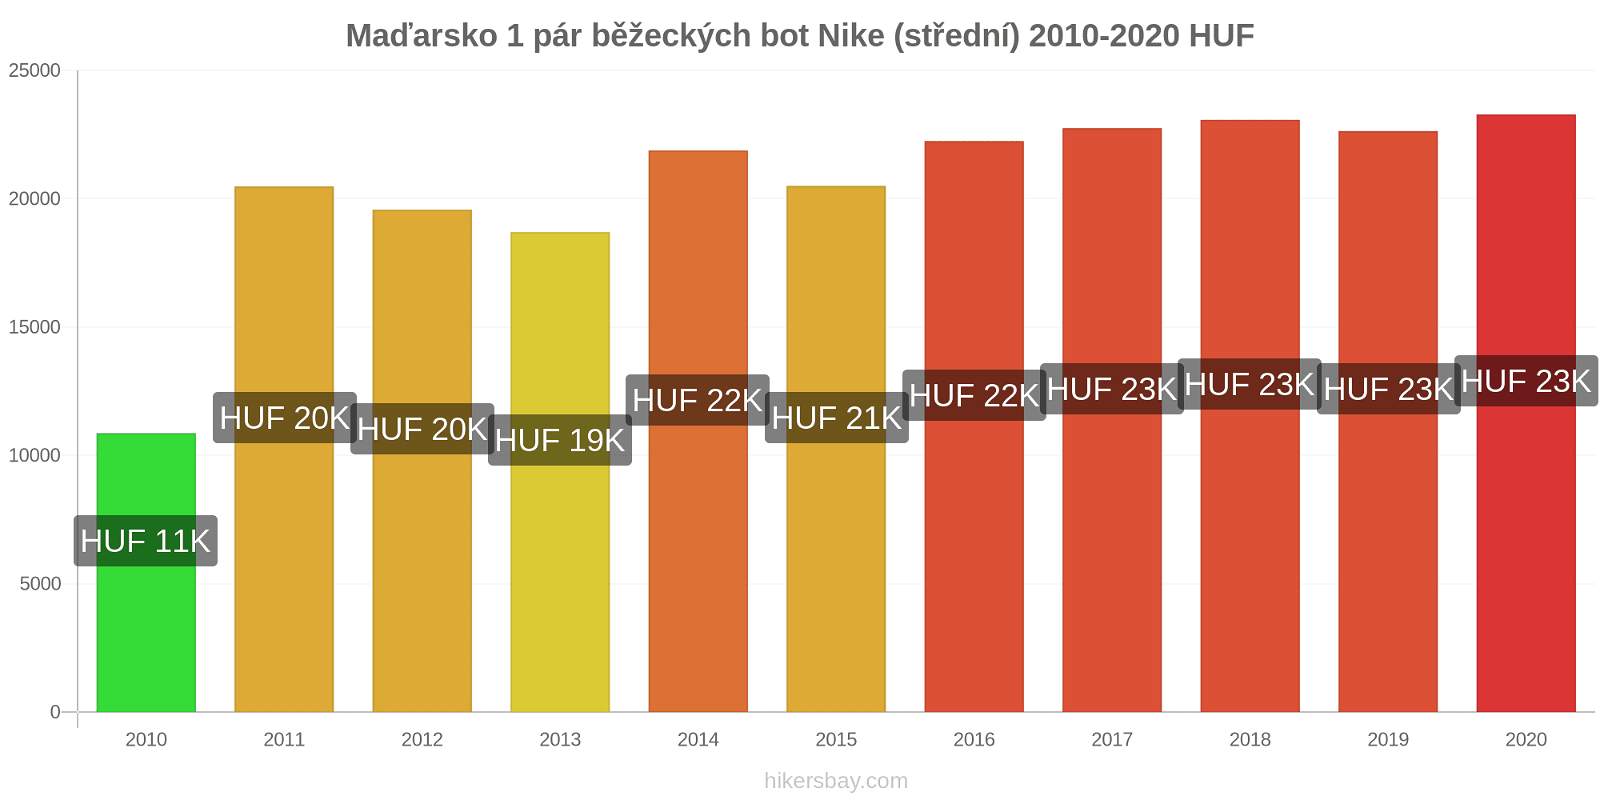 Maďarsko změny cen 1 pár běžeckých bot Nike (střední) hikersbay.com